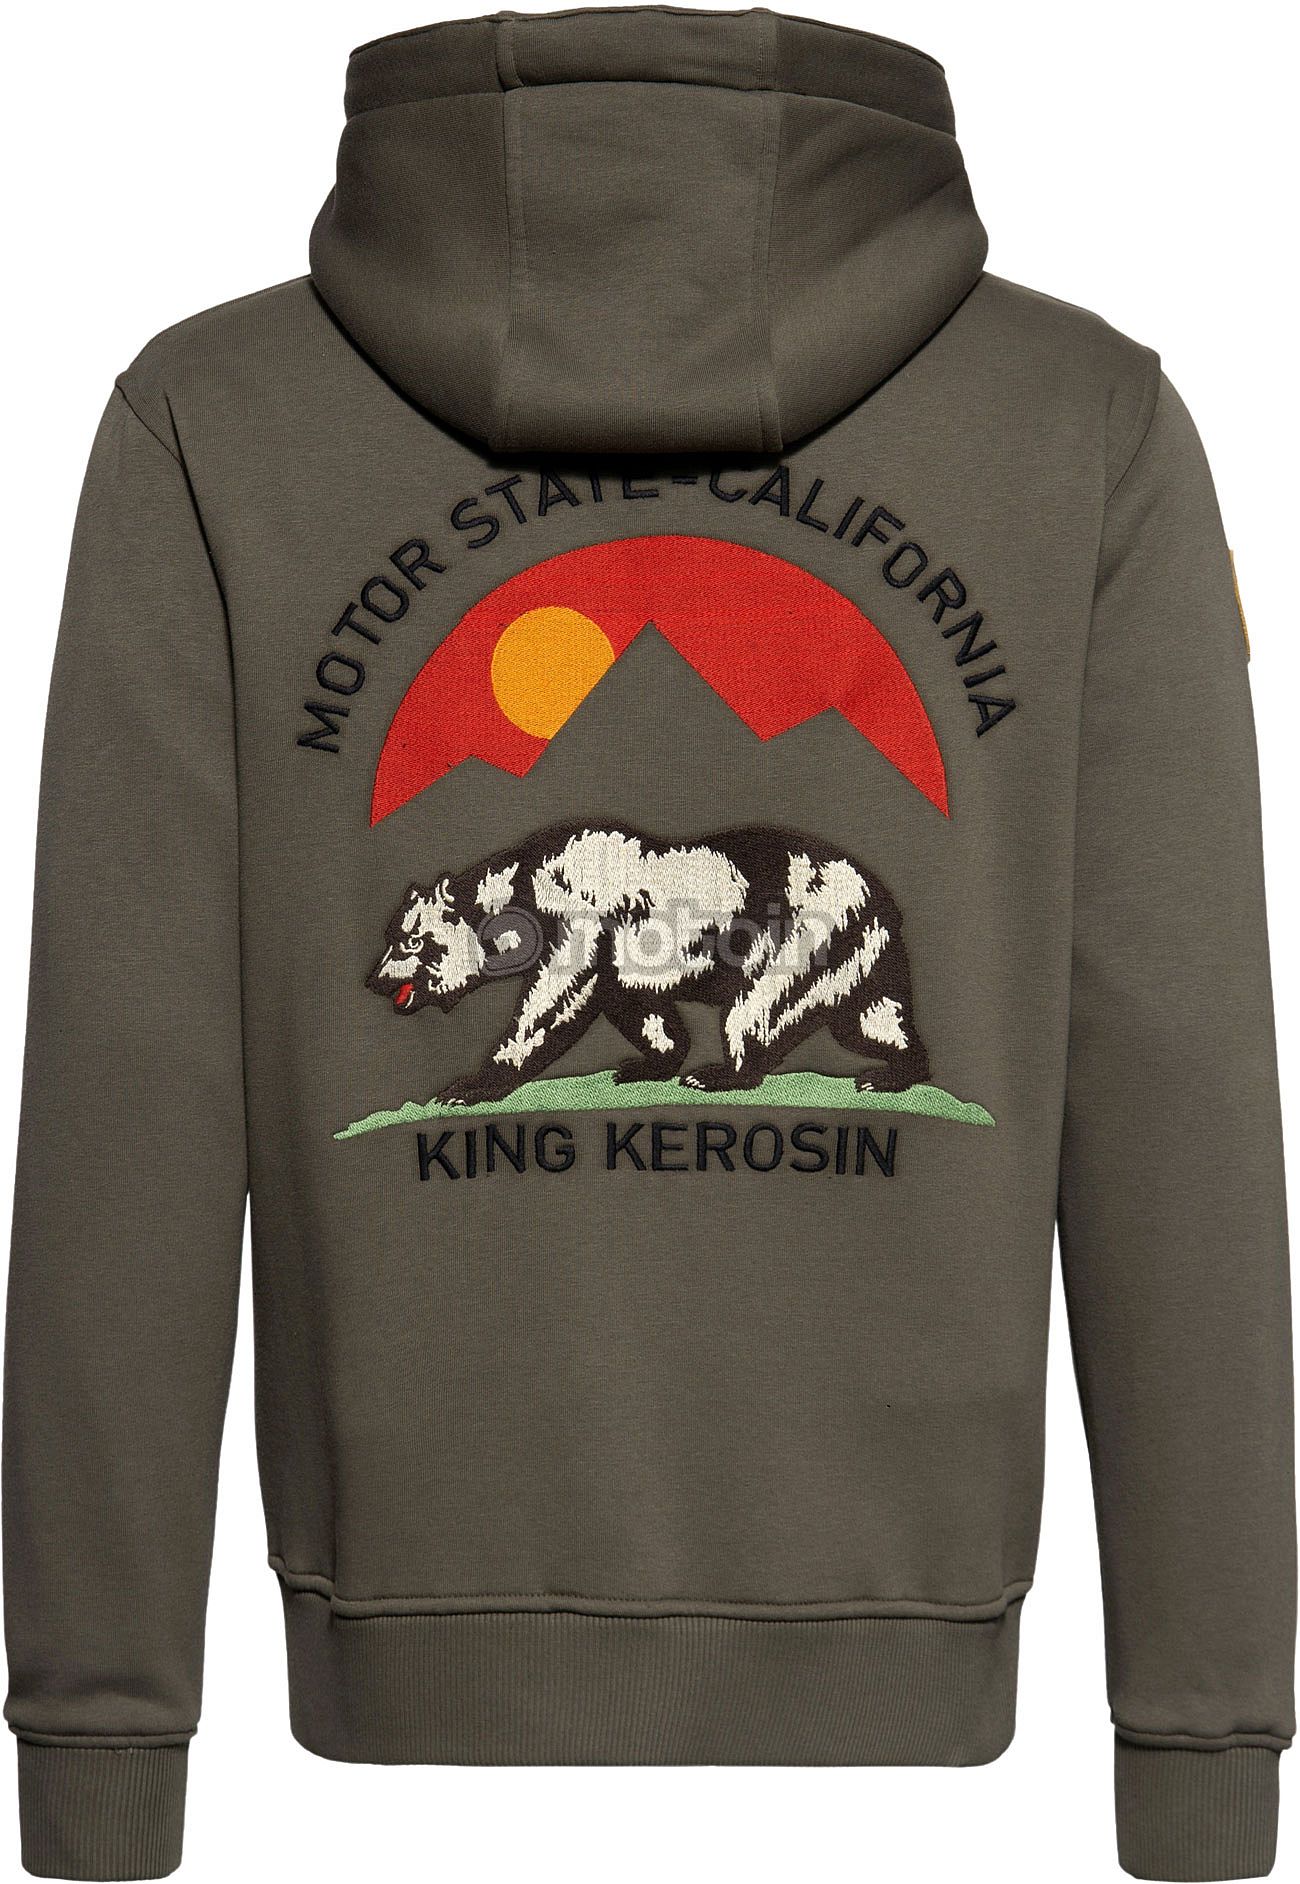 King Kerosin Motor Gear - Motor State California, zip hoodie